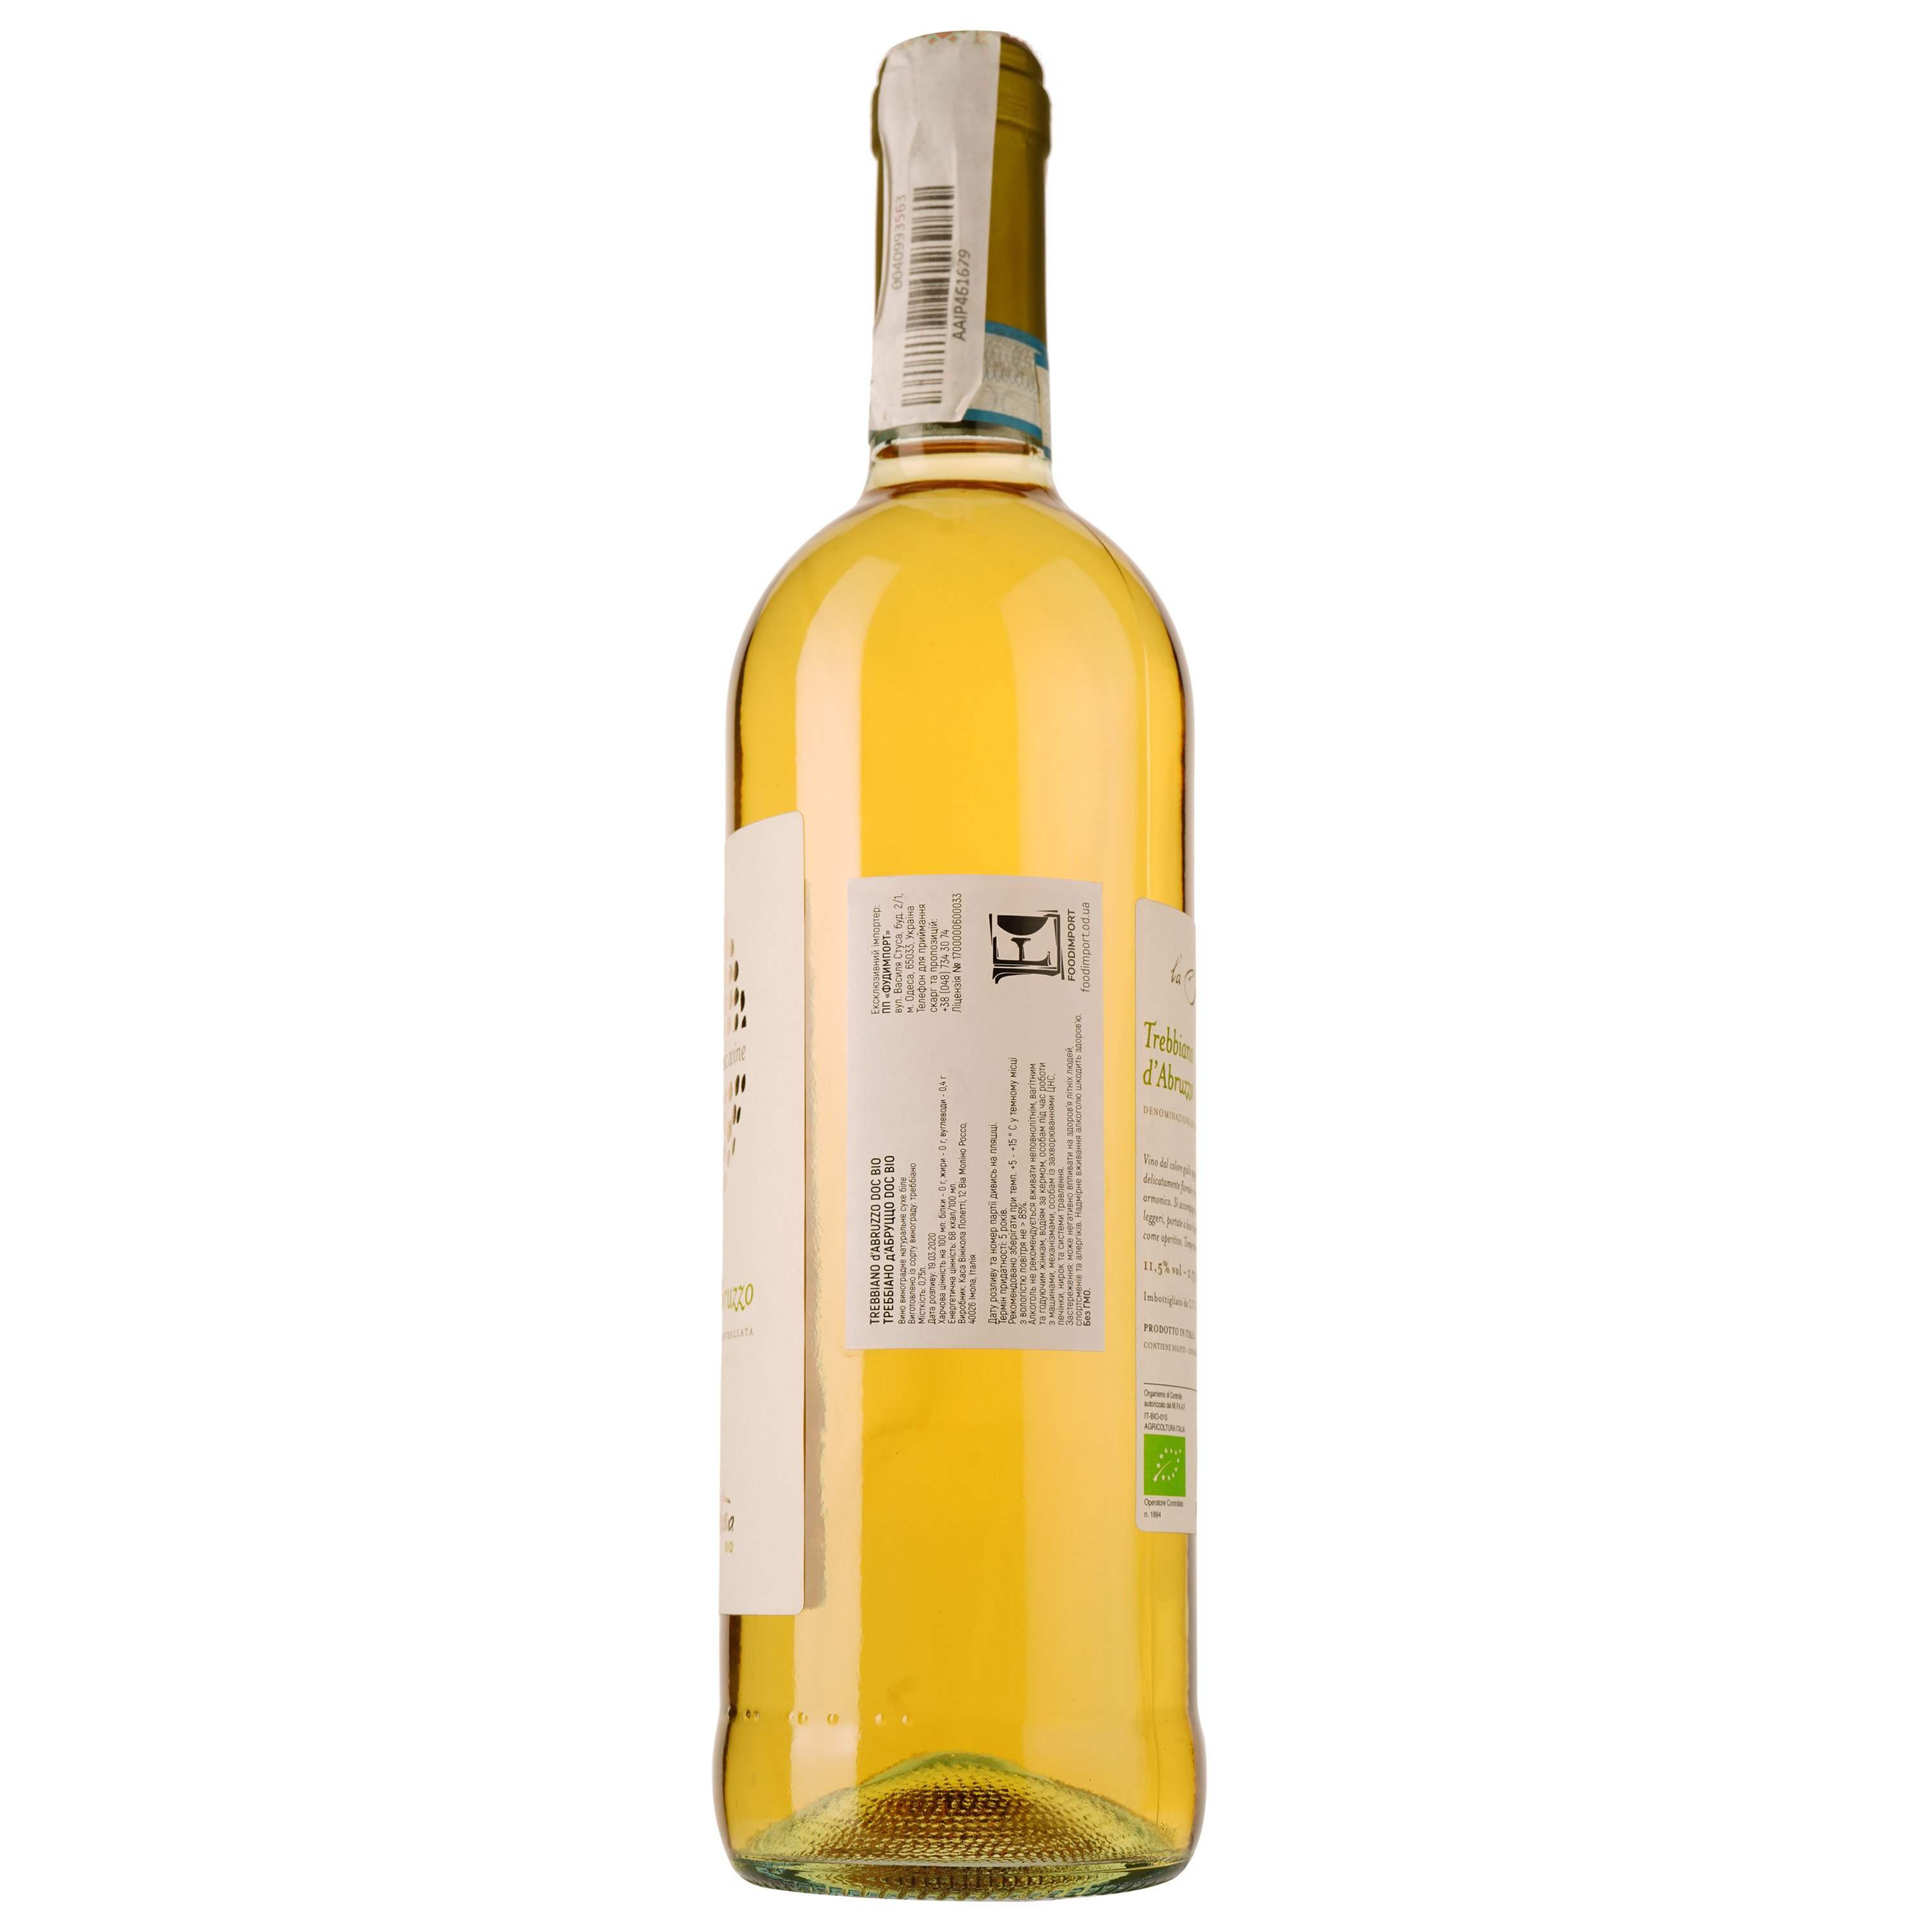 Вино Casa Vinicola, Poletti Trebbiano d'Abruzzo Biologio, біле, сухе, 0,75 л - фото 3